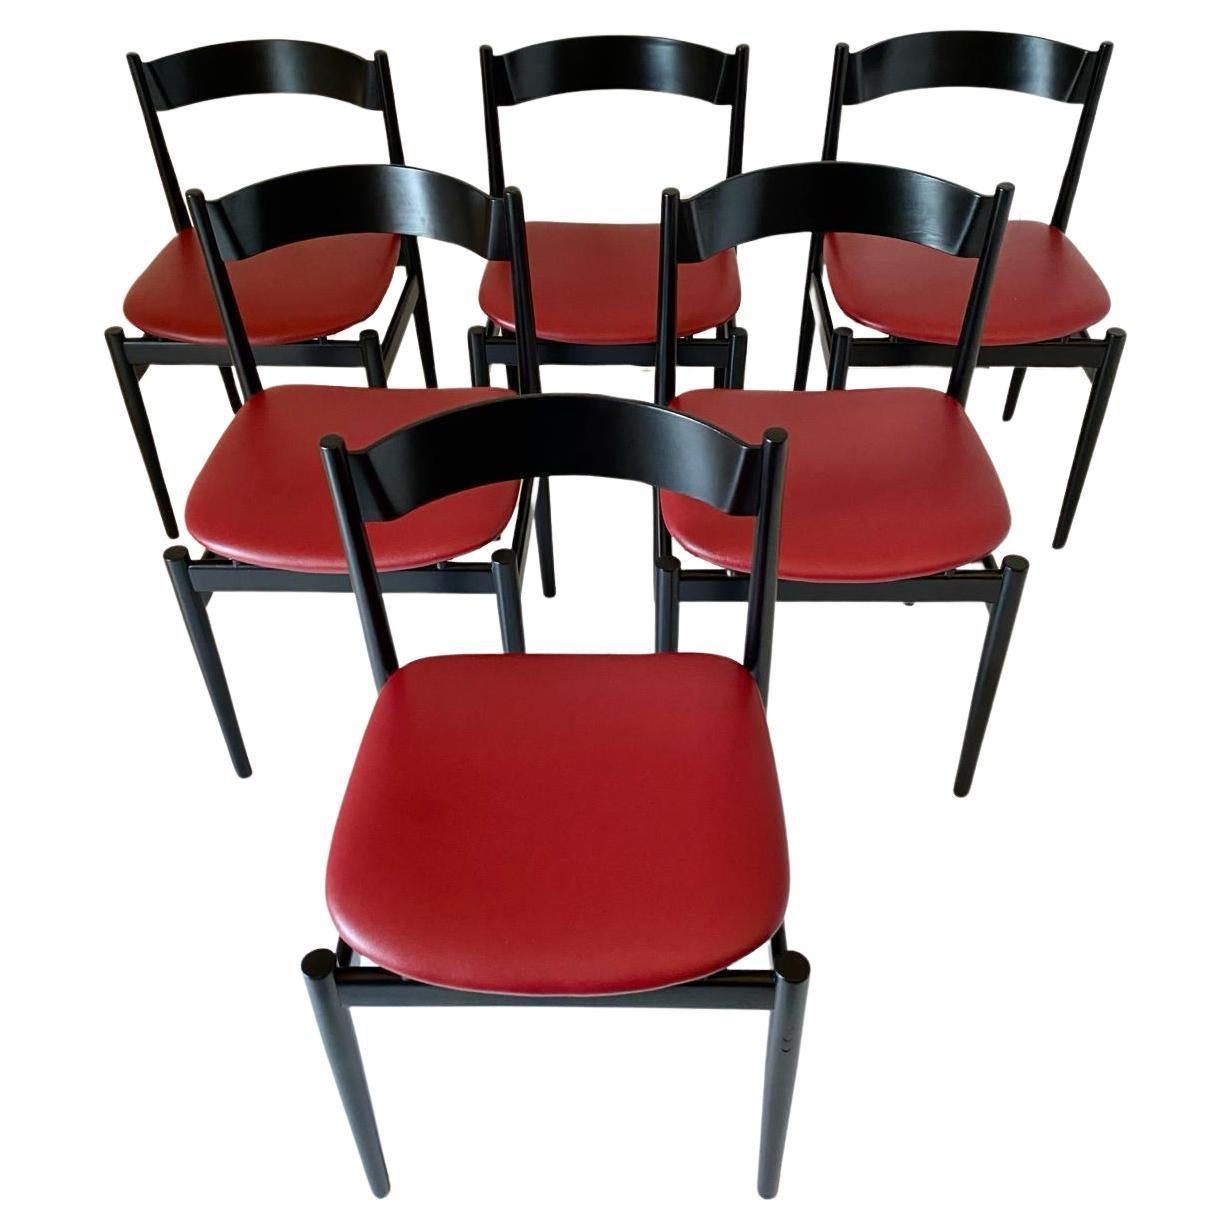 Ensemble de six chaises de salle à manger modernes italiennes Gianfranco Frattini pour Figli di Amedeo Cassina - Italie 1960's

Ensemble de six chaises de salle à manger en noyer de couleur noire avec des sièges en faux cuir rouge, modèle 107 conçu